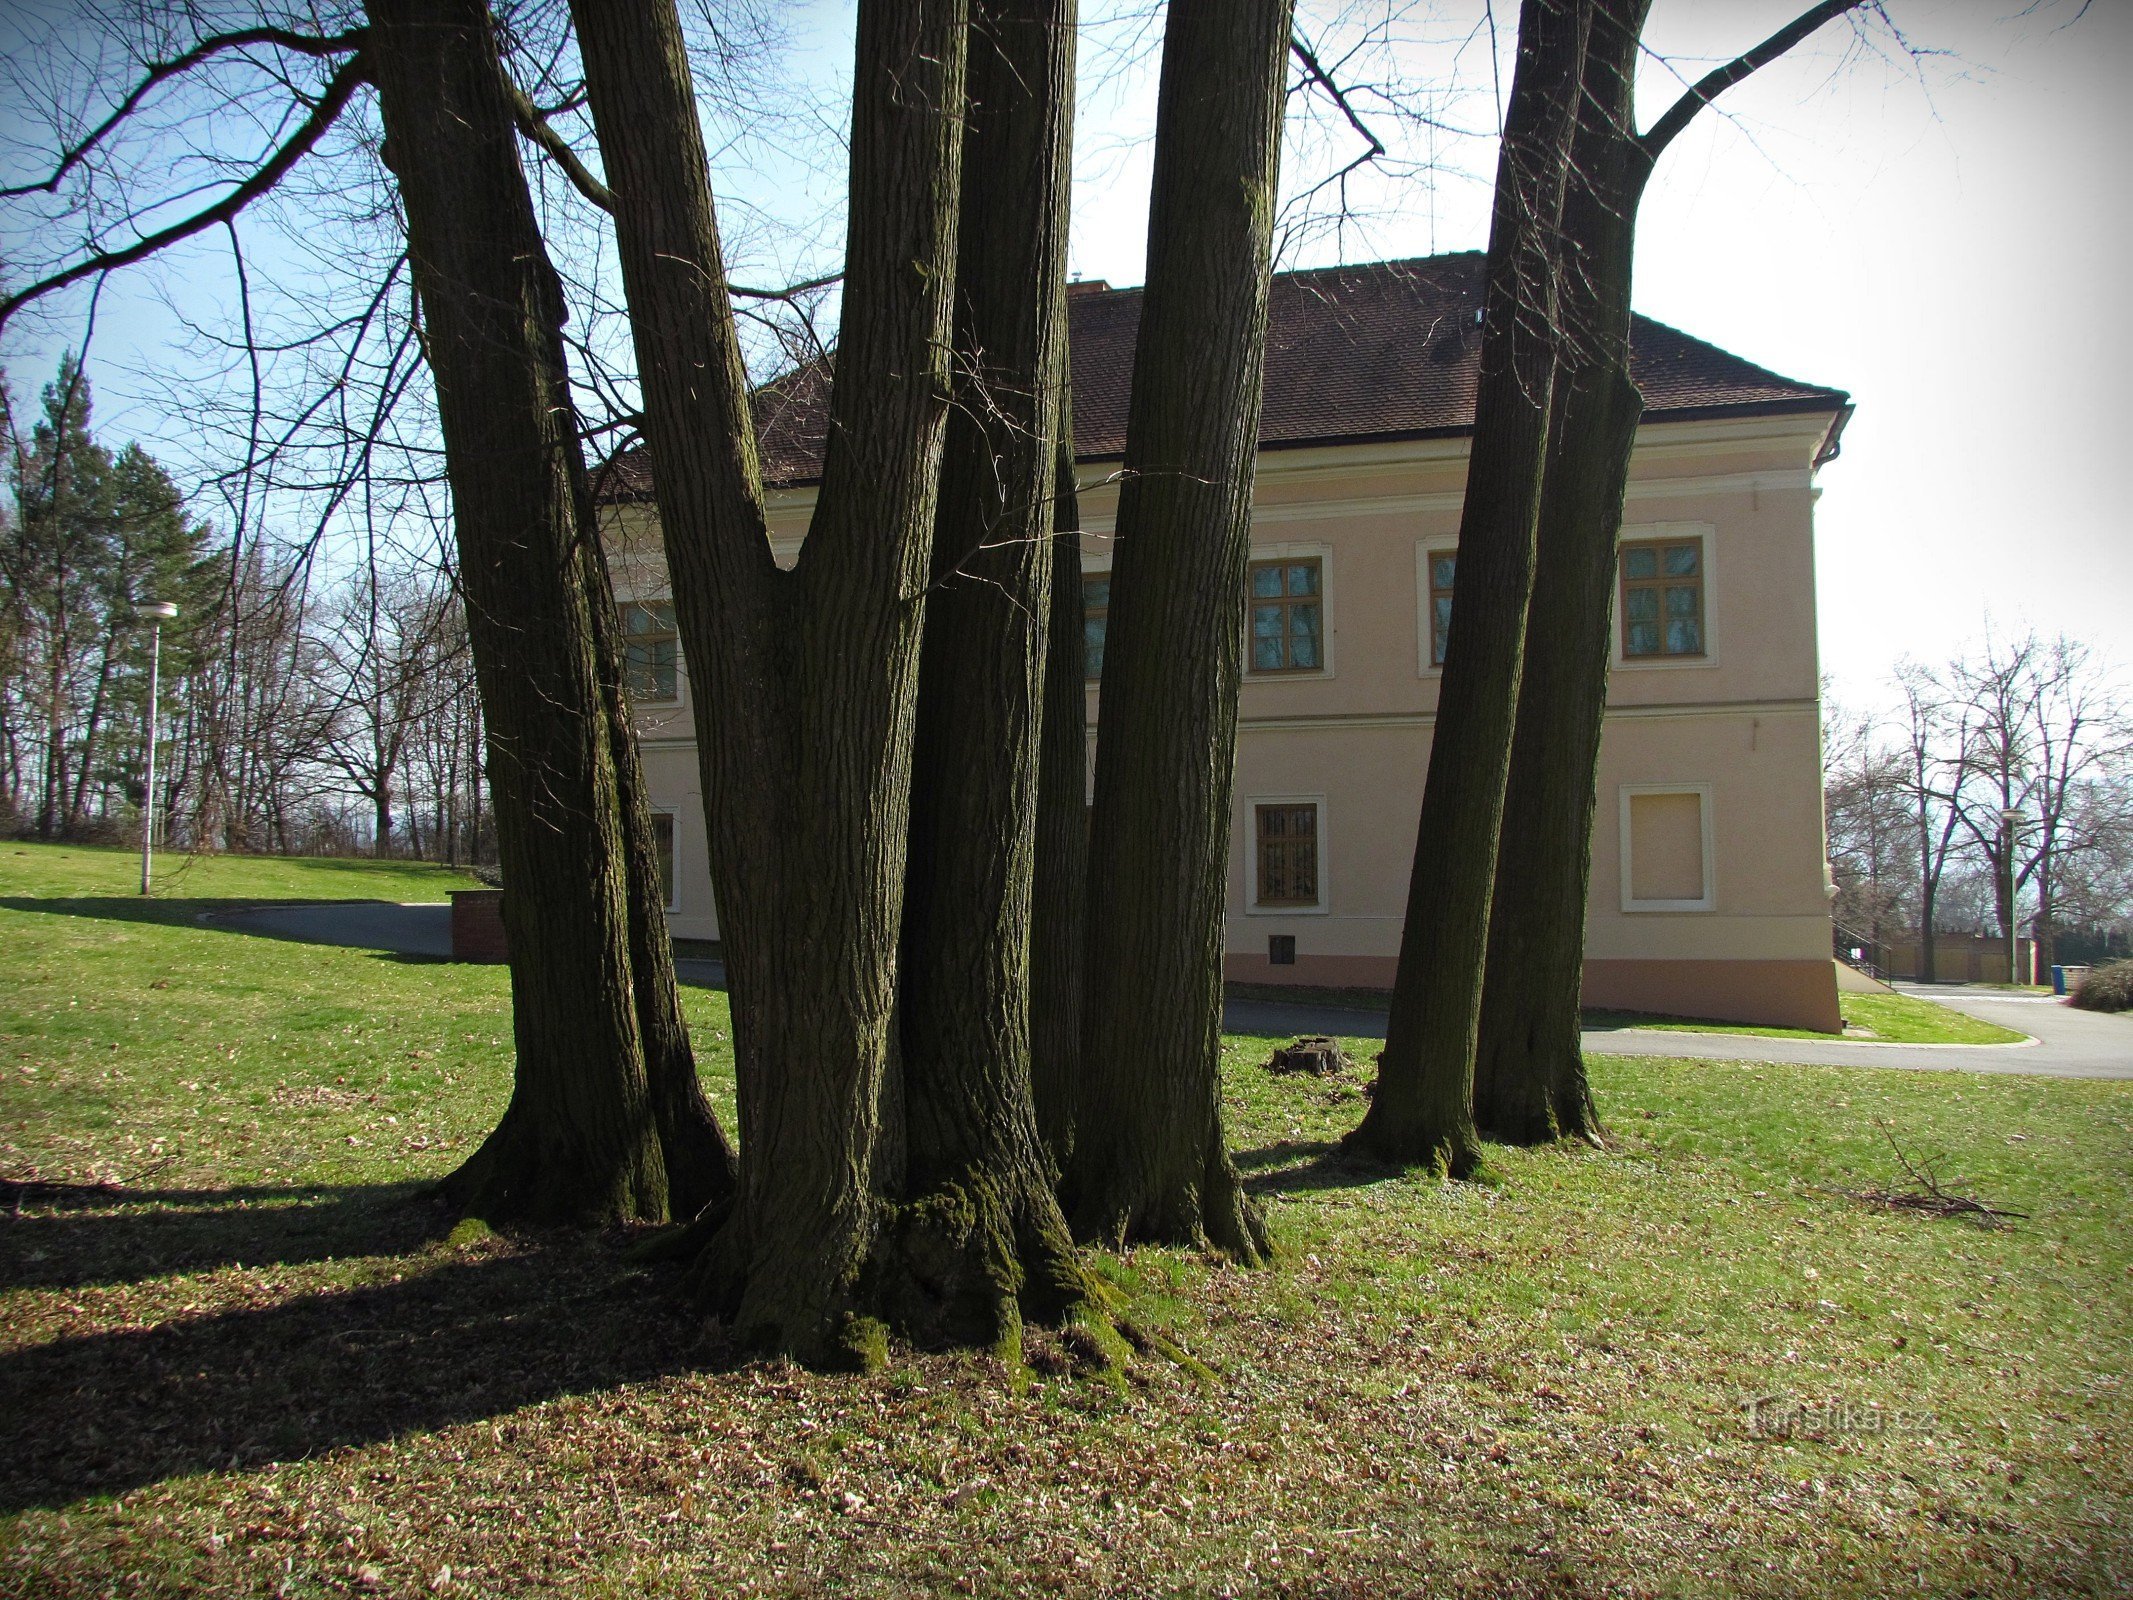 Klečůvka - castle and park